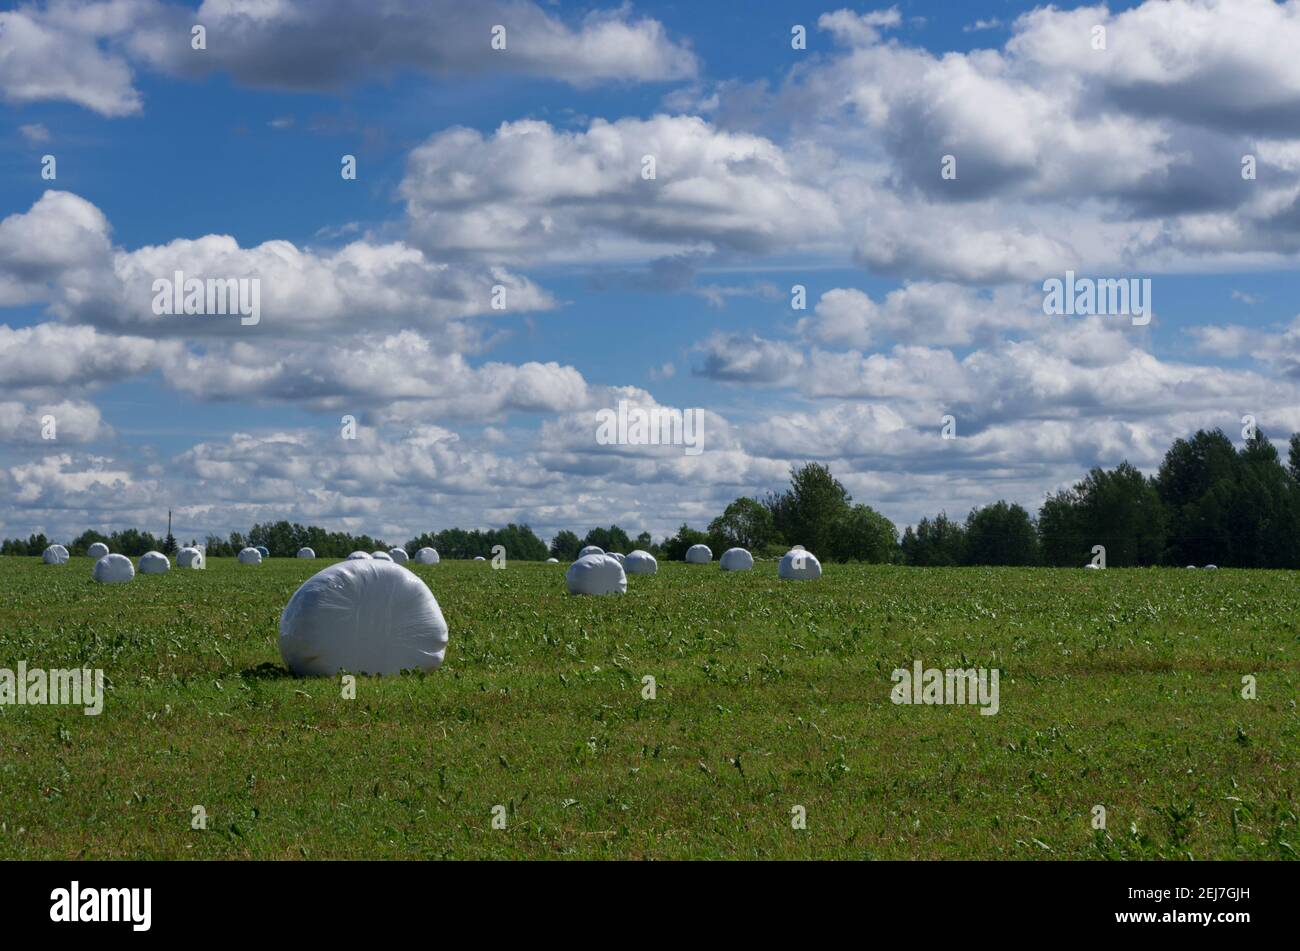 Paesaggio estivo con rotoli di fieno in confezione di plastica su lo sfondo del cielo con le nuvole Foto Stock